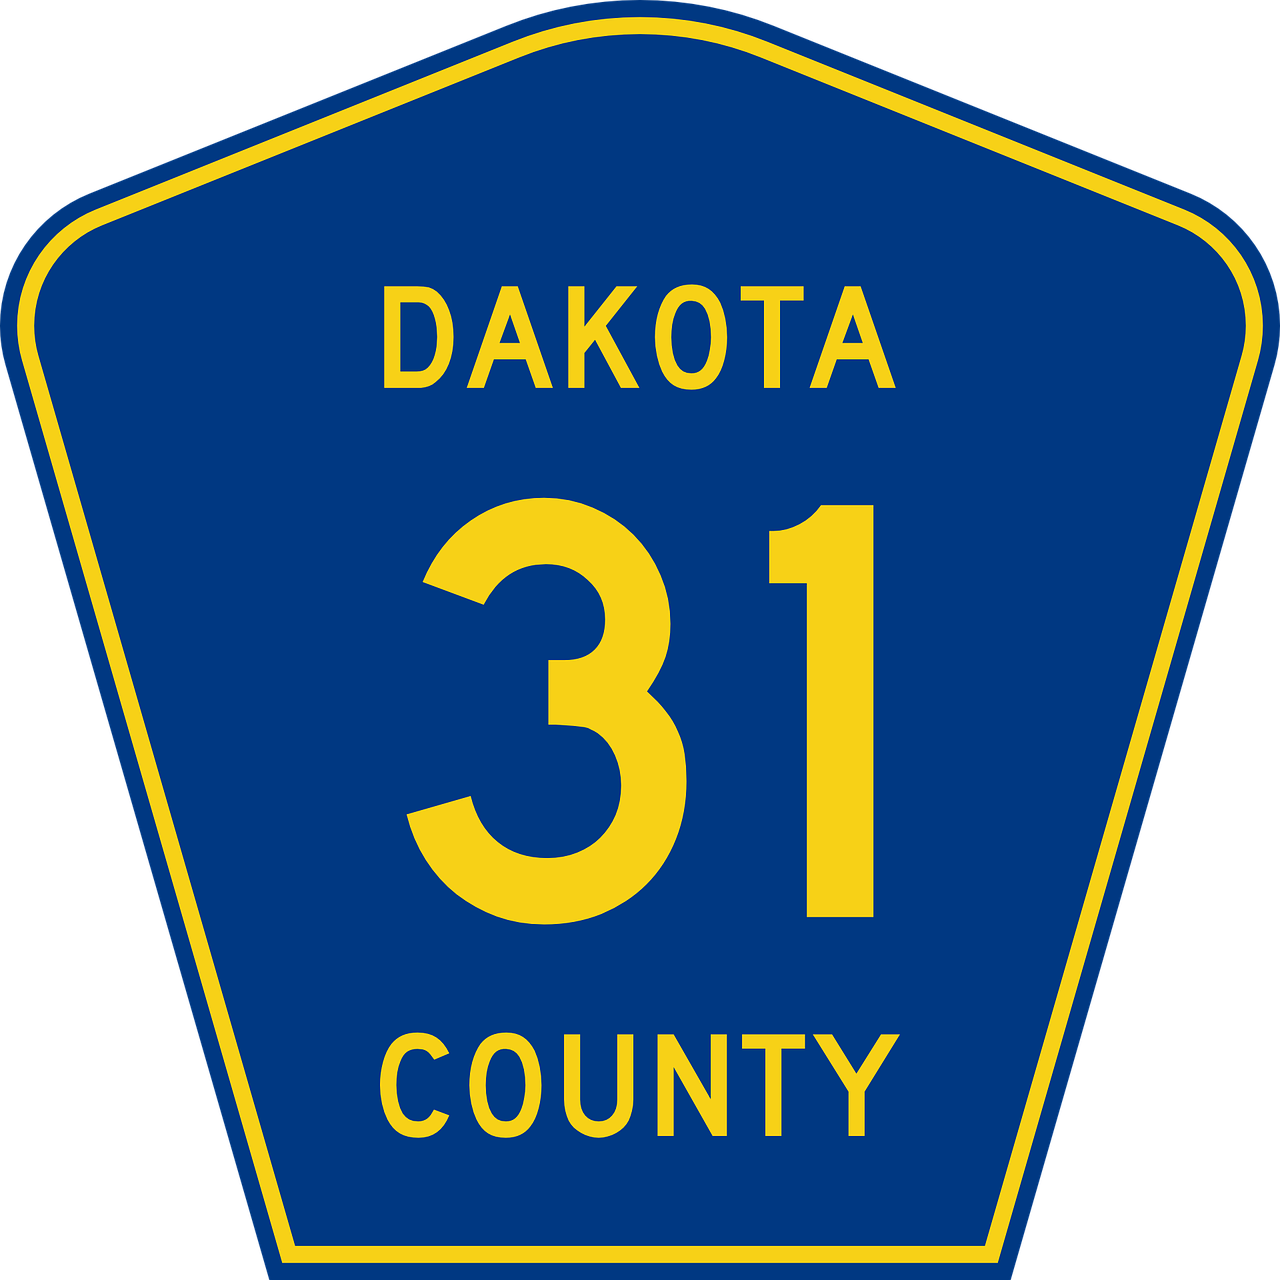 route county dakota free photo